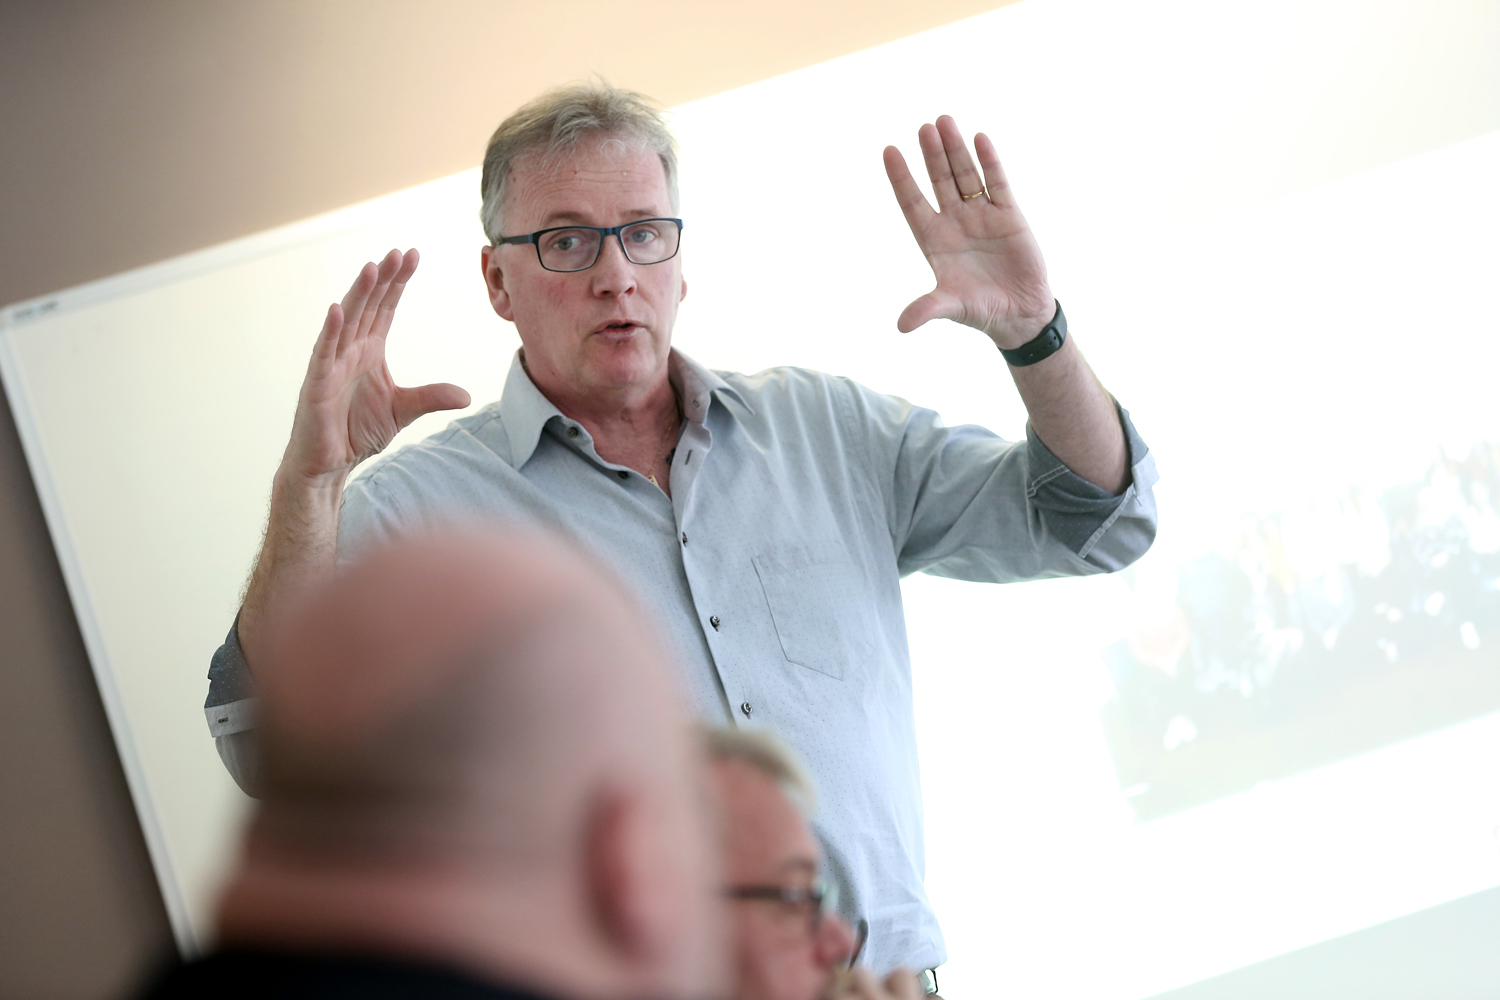 Bilden föreställer MÅlareförbundets ordförande Mikael Johansson, som står och gestikulerar med händerna framför en whiteboard. Han har blå skjorta och glasögon på sig.